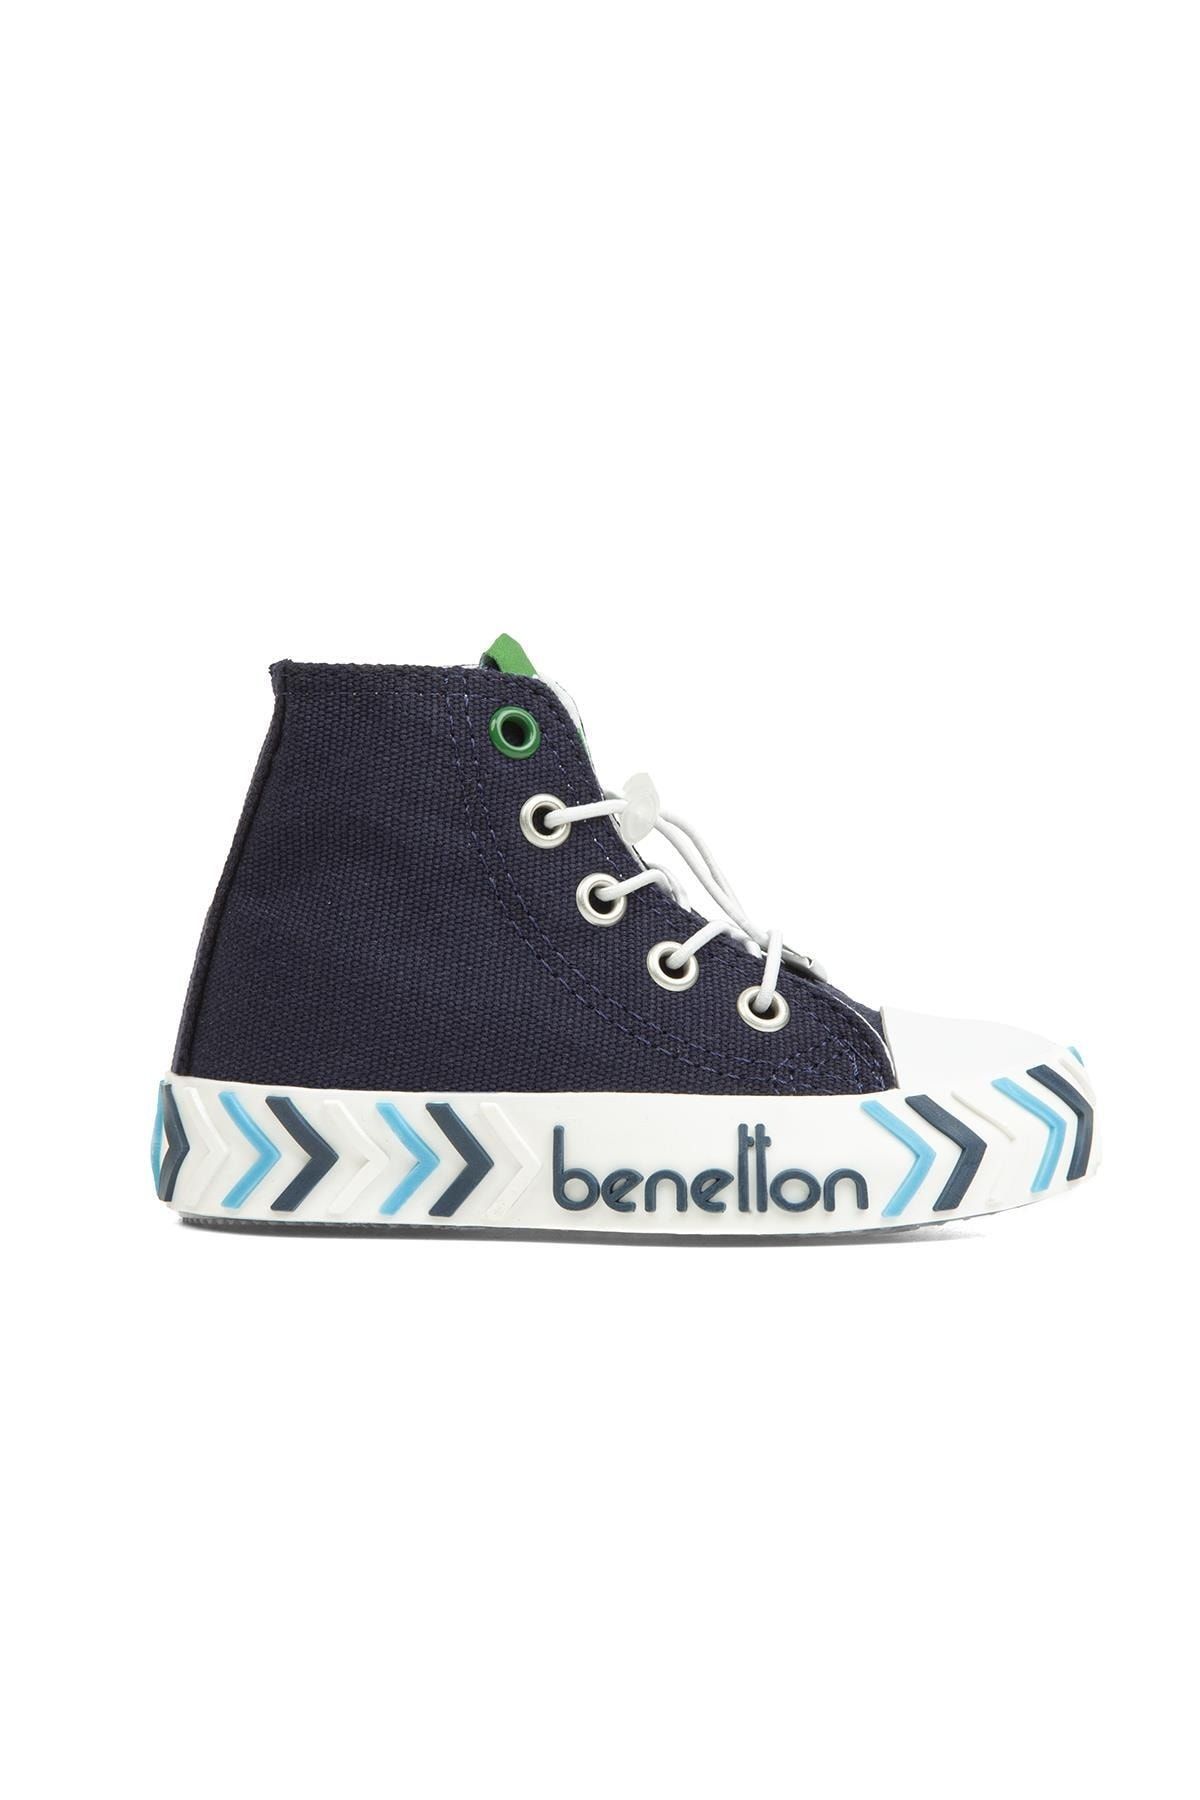 Benetton ® | Bn-30644 - 3394 Lacivert - Çocuk Spor Ayakkabı